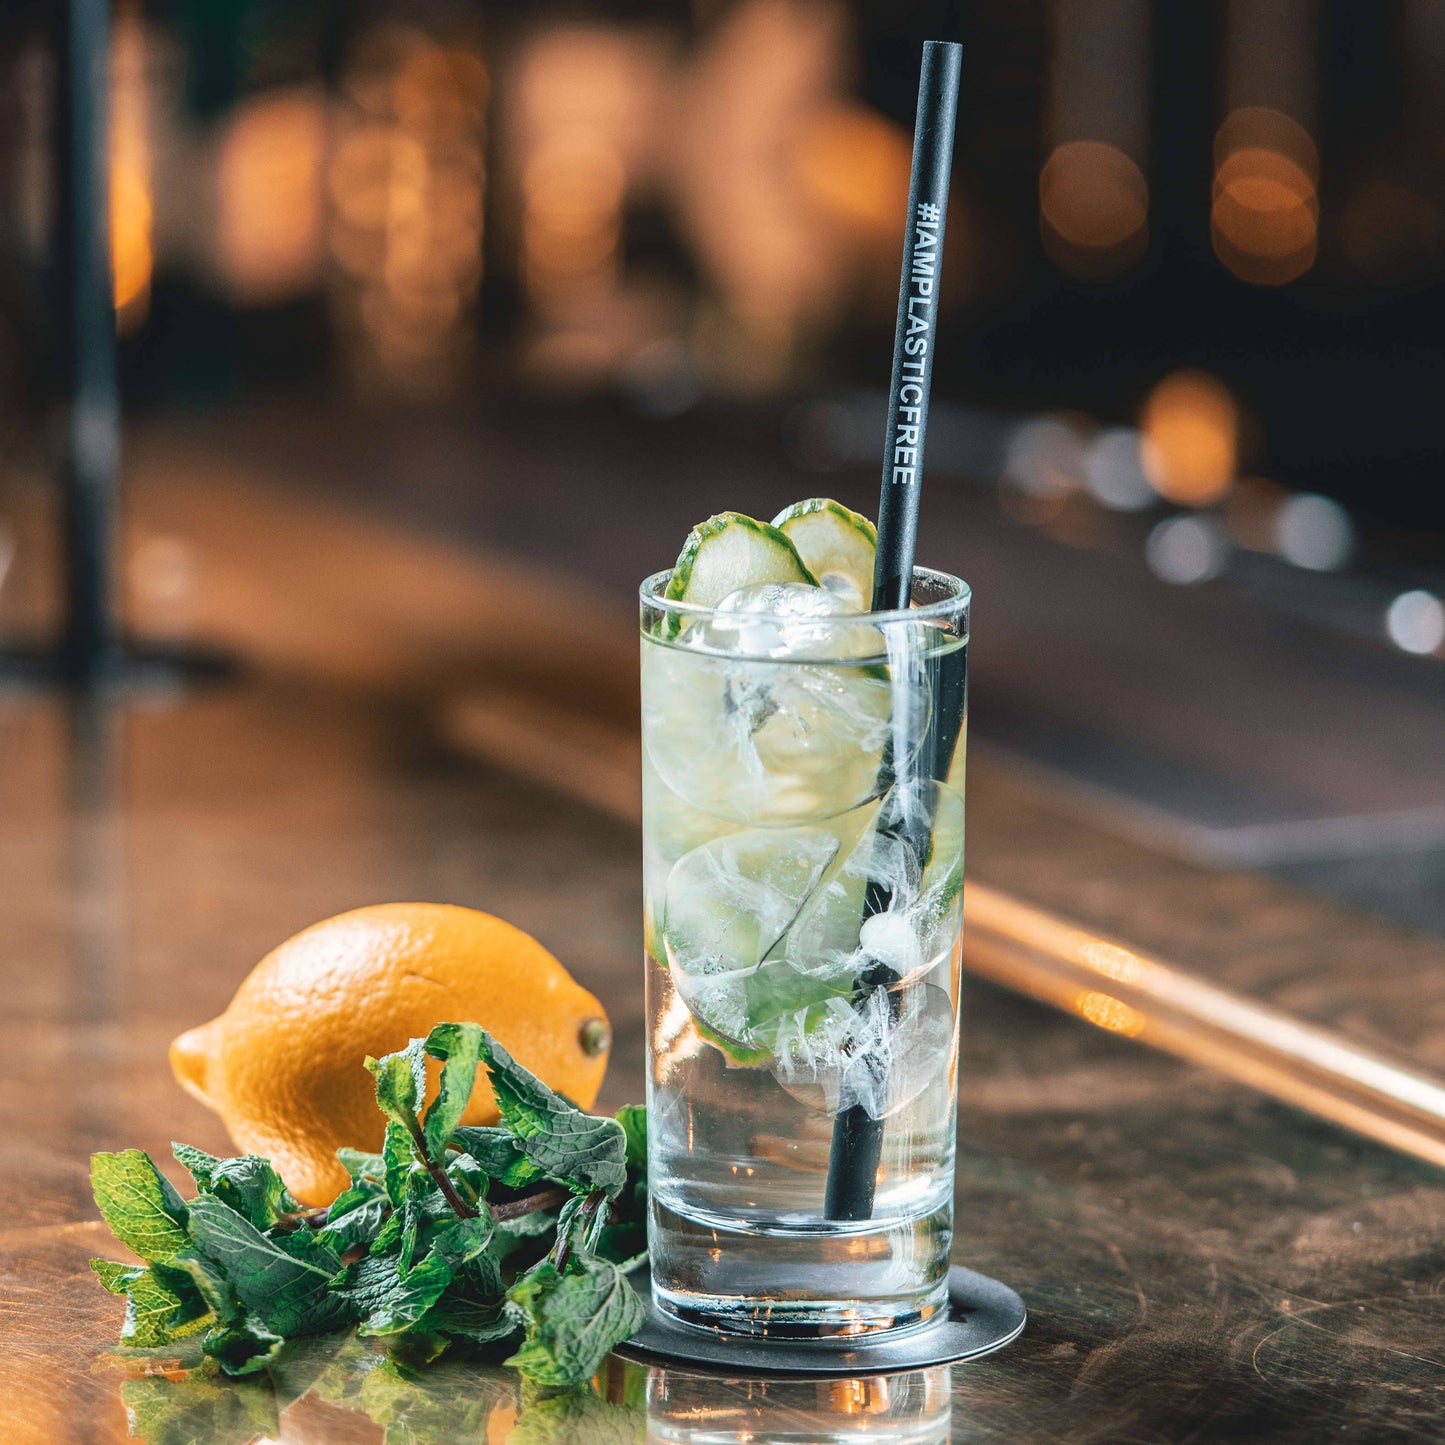 #IAMPLASTICFREE Trinkhalm 2.0 in Highball Glas mit klarem Cocktail, Eis und Gurkenscheiben, dazu Orange und Minzzweig